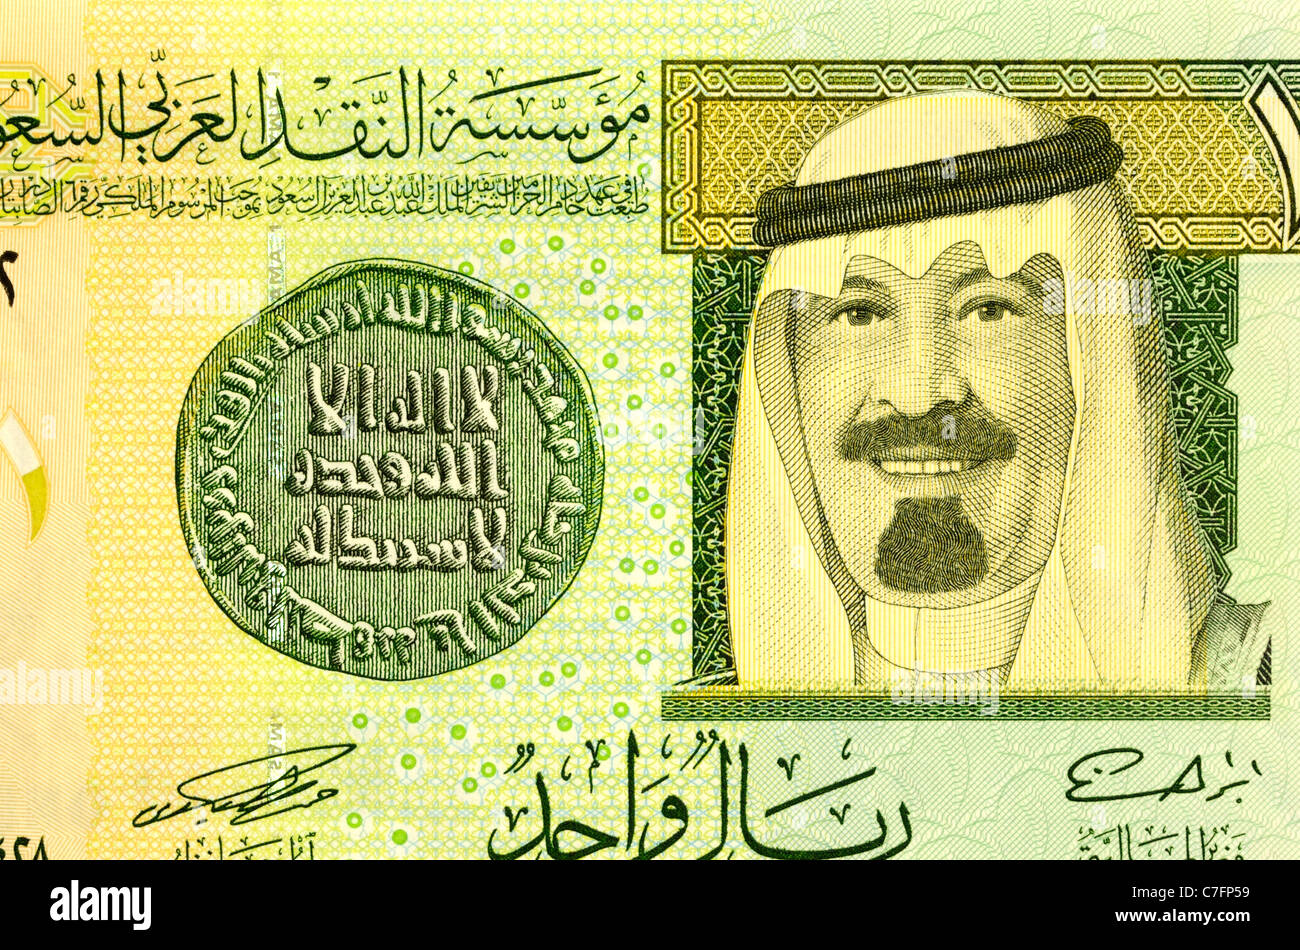 Saudi Arabia 1 One Riyal Bank Note. Stock Photo